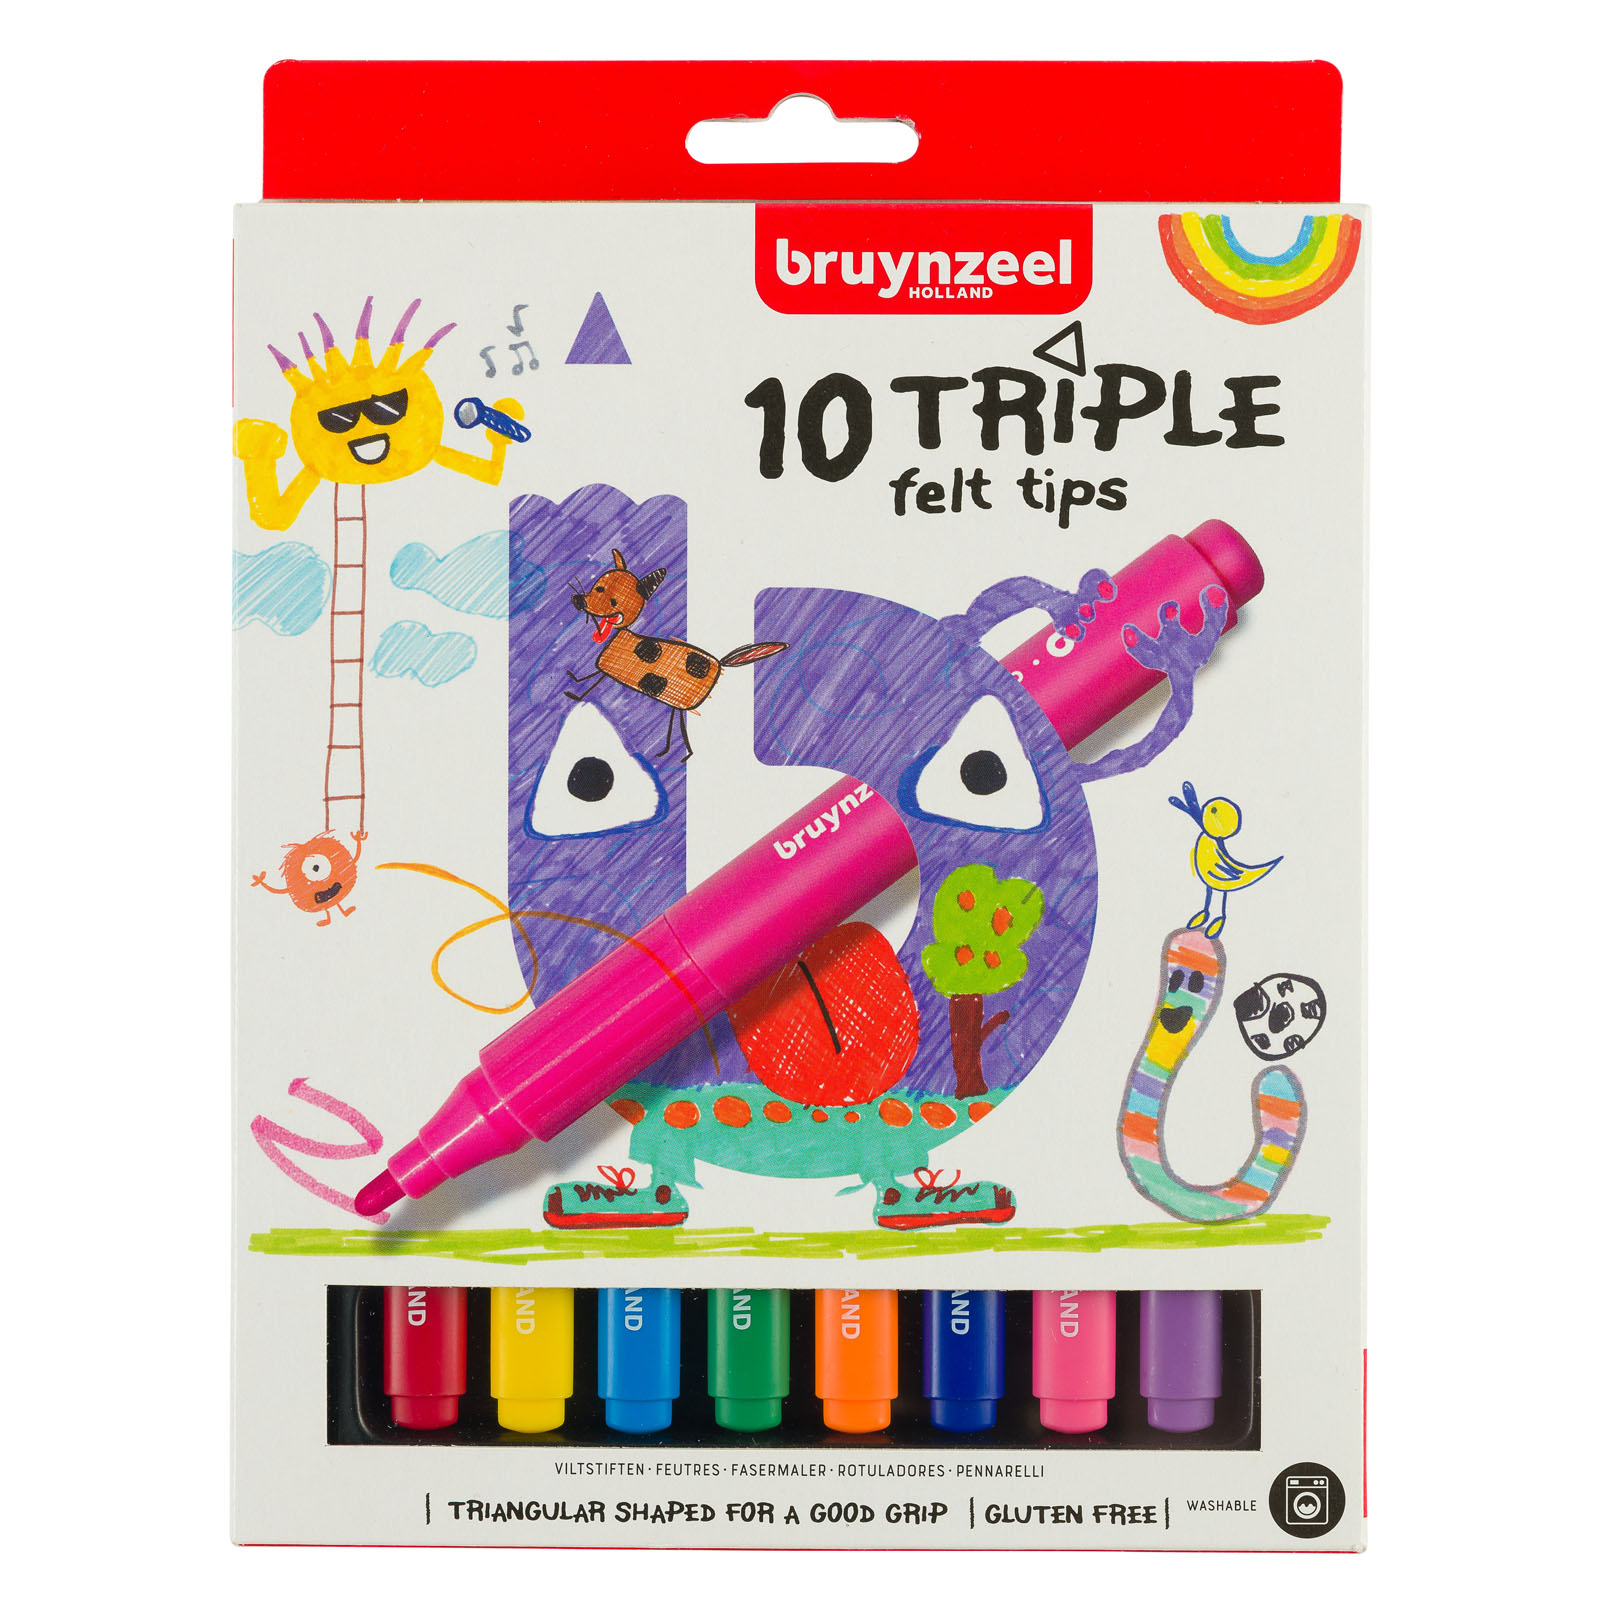 Bruynzeel • Rotuladores para niños triple set 10